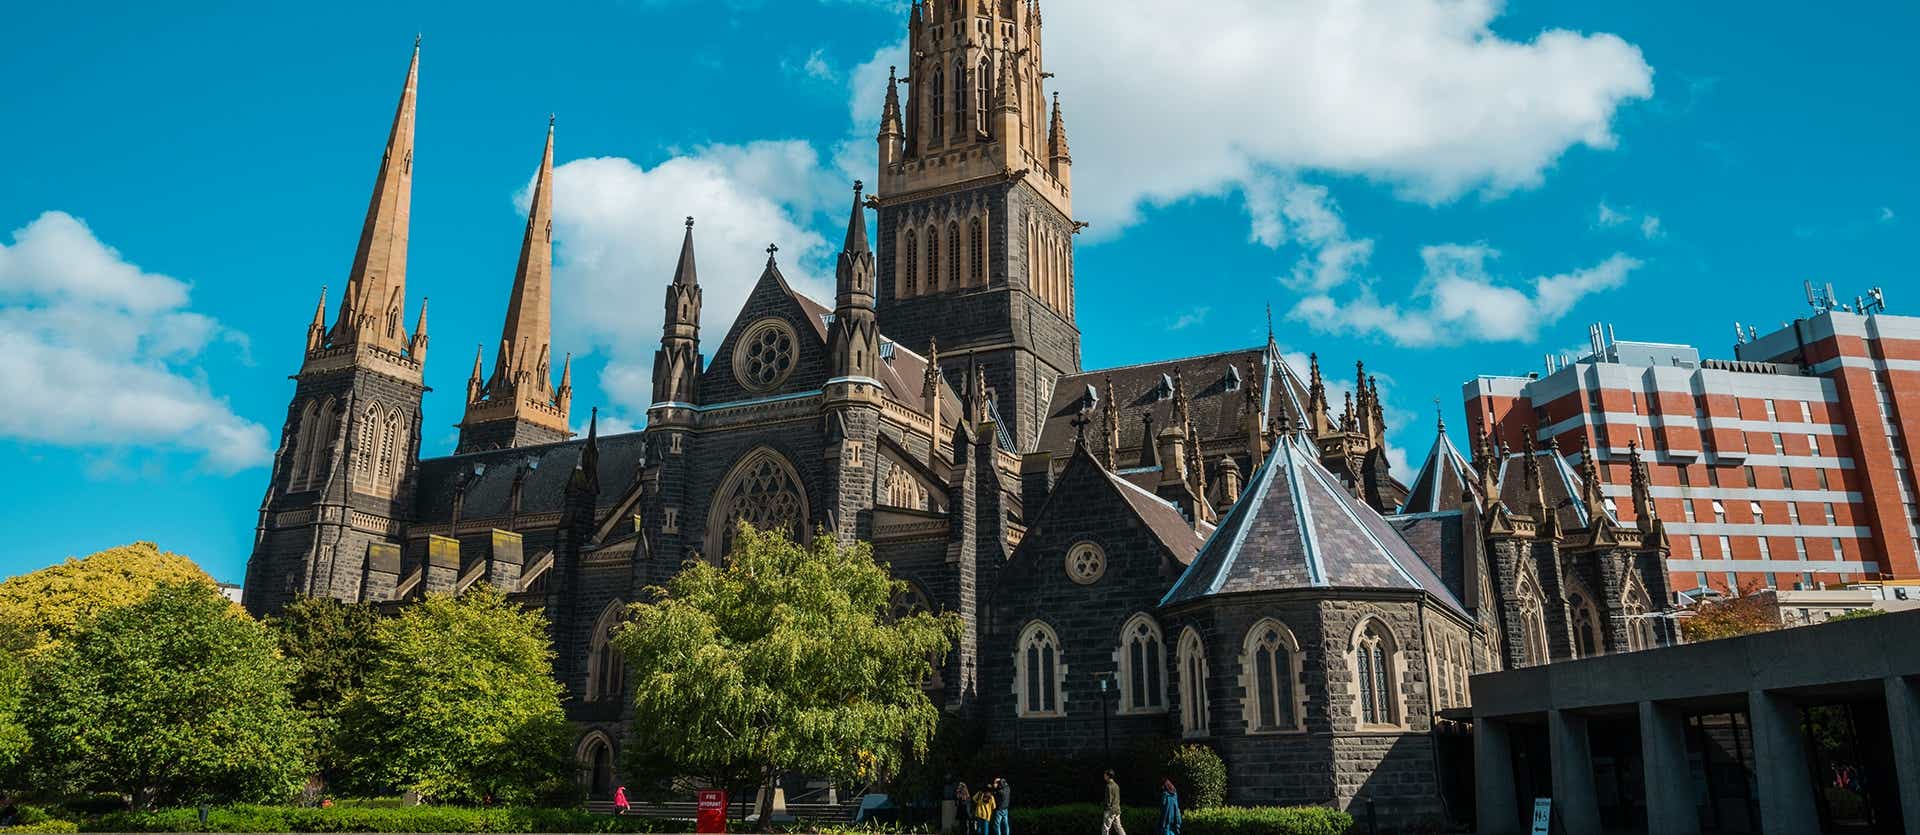 Catedral de San Patricio <span class="iconos separador"></span> Melbourne